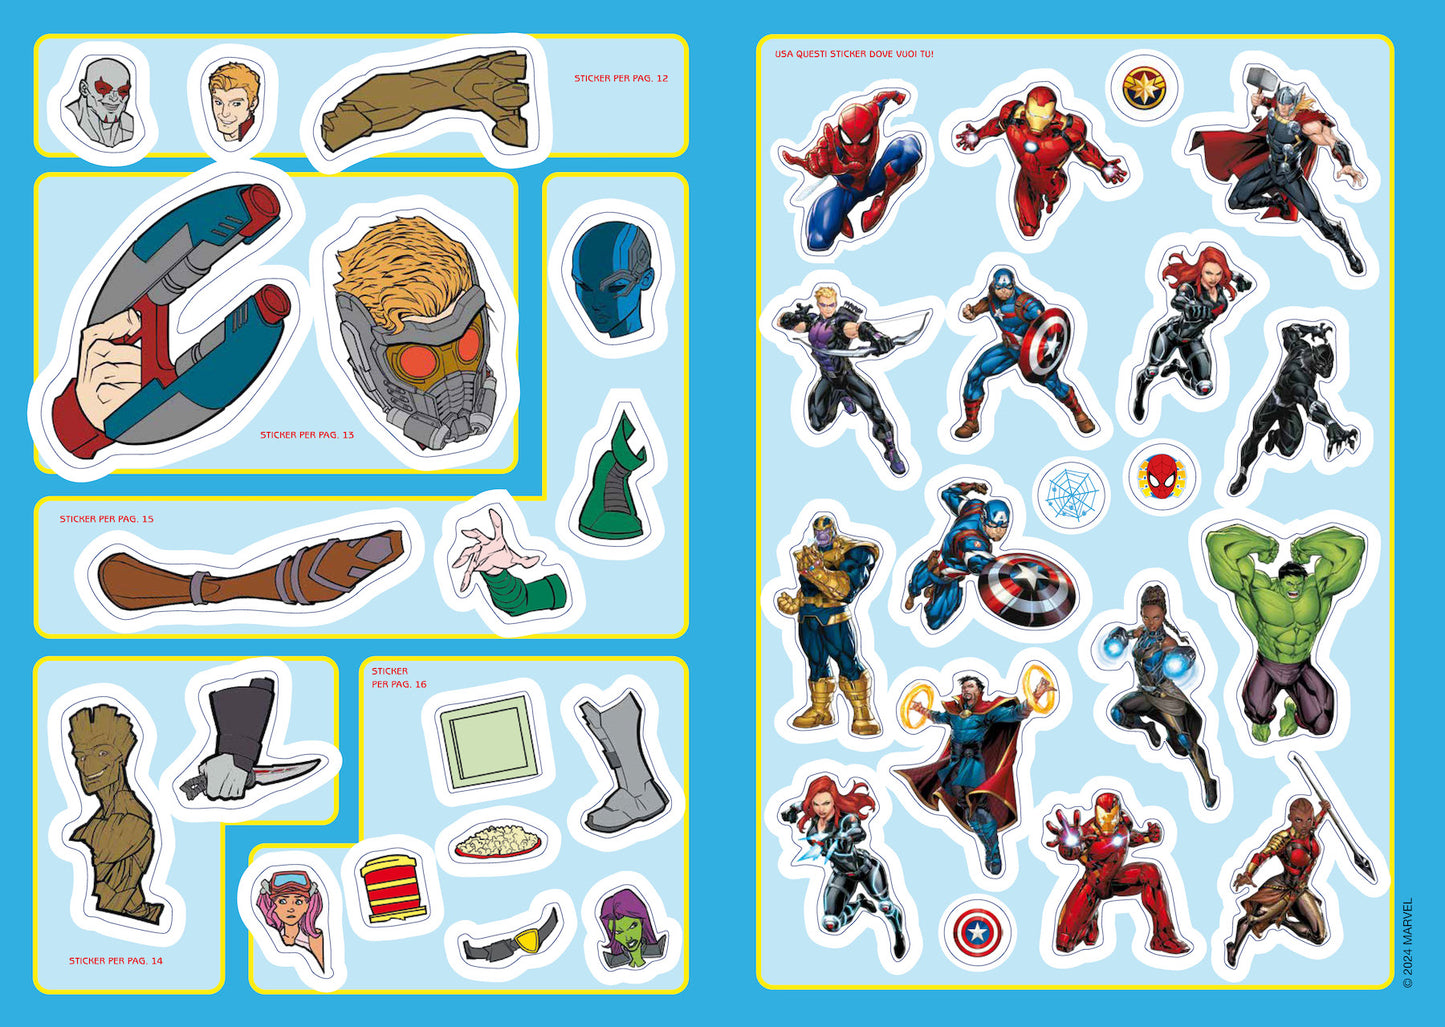 Marvel Staccattacca&colora::I tuoi supereroi